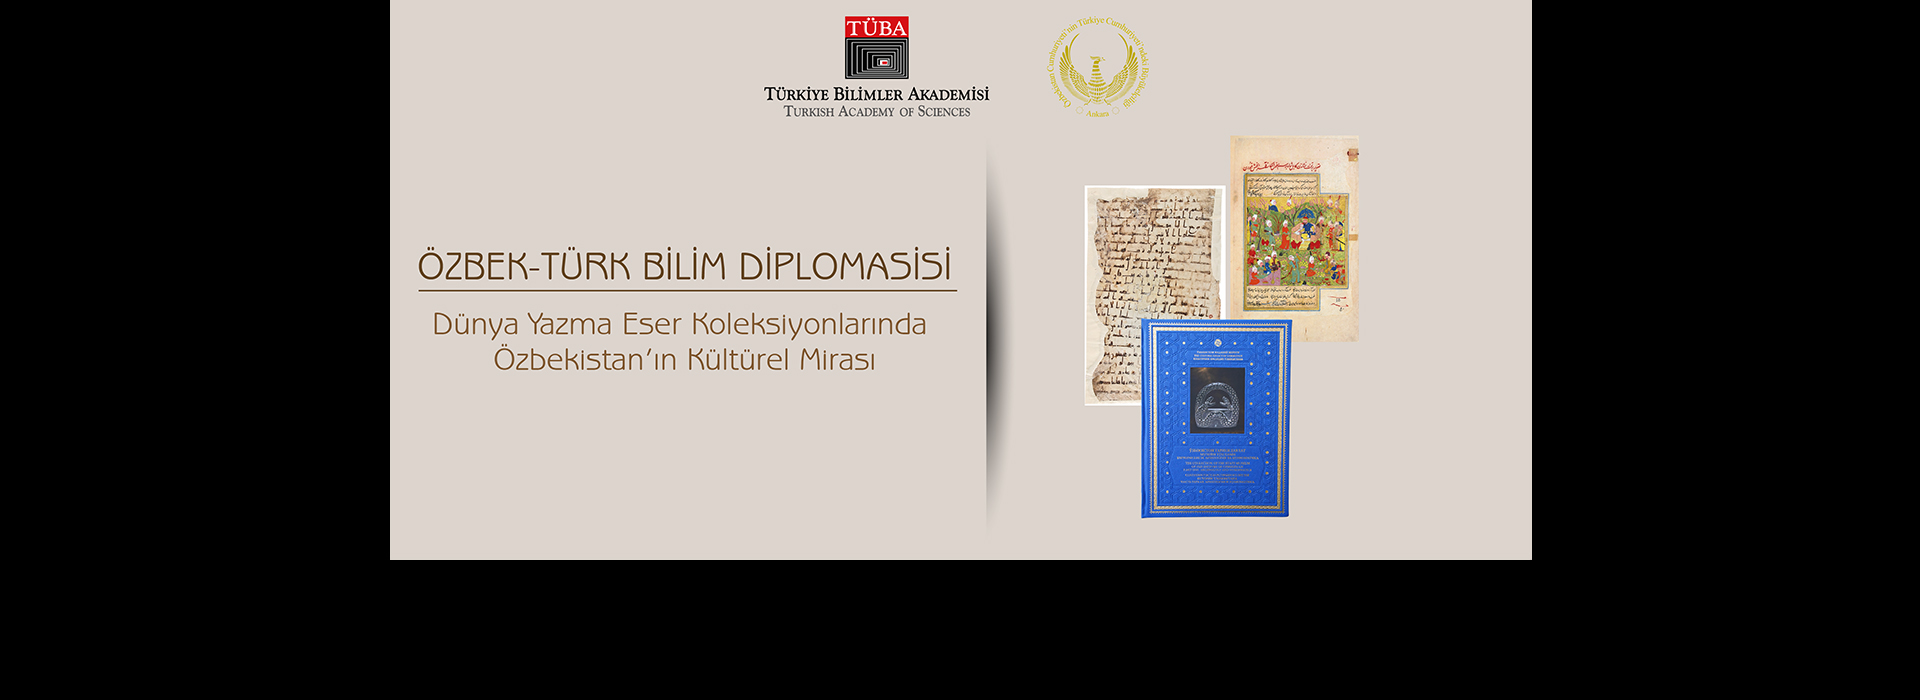 TÜBA ve Özbekistan Bilim Diplomasisinde Kültür Tarihi Buluşması